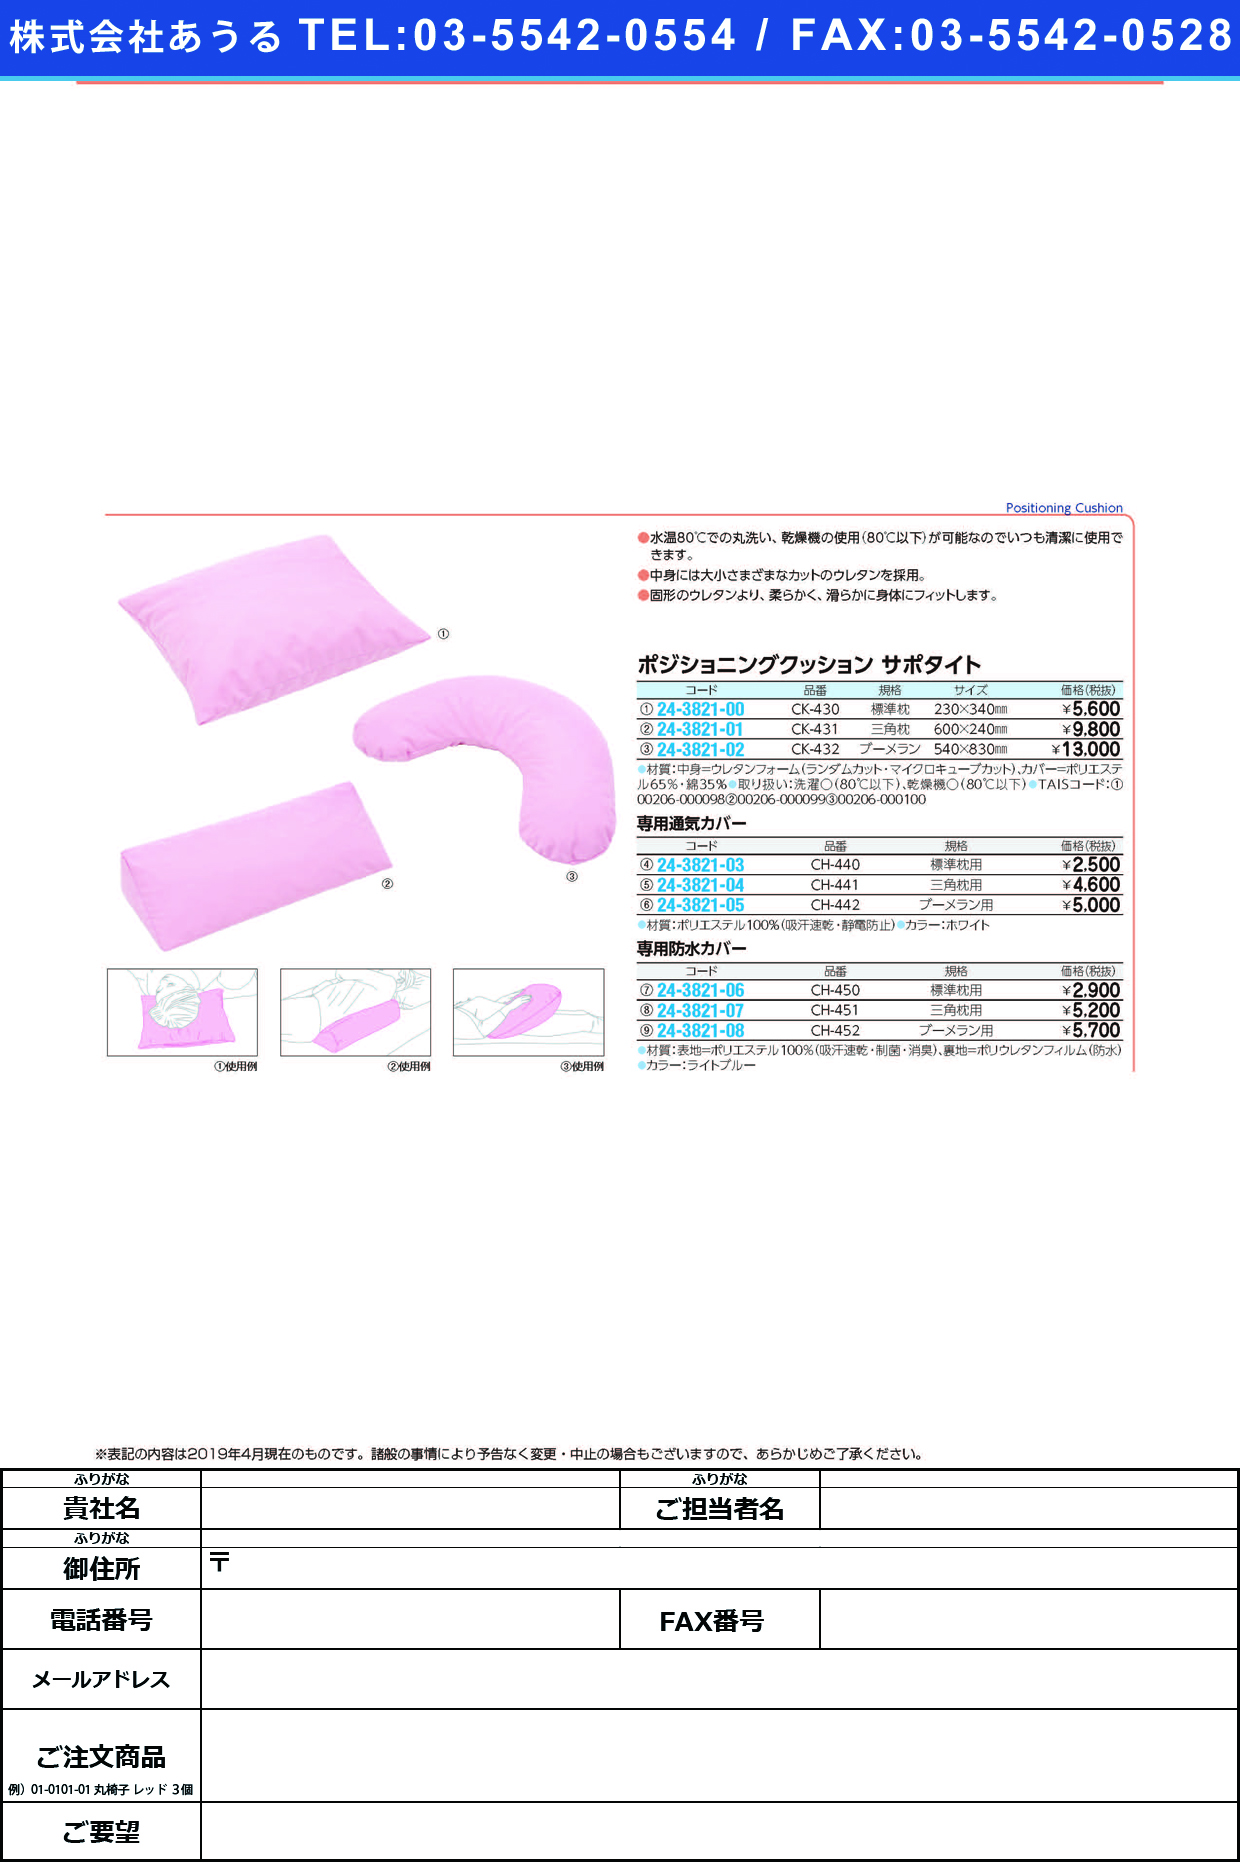 (24-3821-07)サポタイト用防水カバー CH-451(ｻﾝｶｸﾏｸﾗﾖｳ) ｻﾎﾟﾀｲﾄﾖｳﾎﾞｳｽｲｶﾊﾞｰ(ケープ)【1個単位】【2019年カタログ商品】